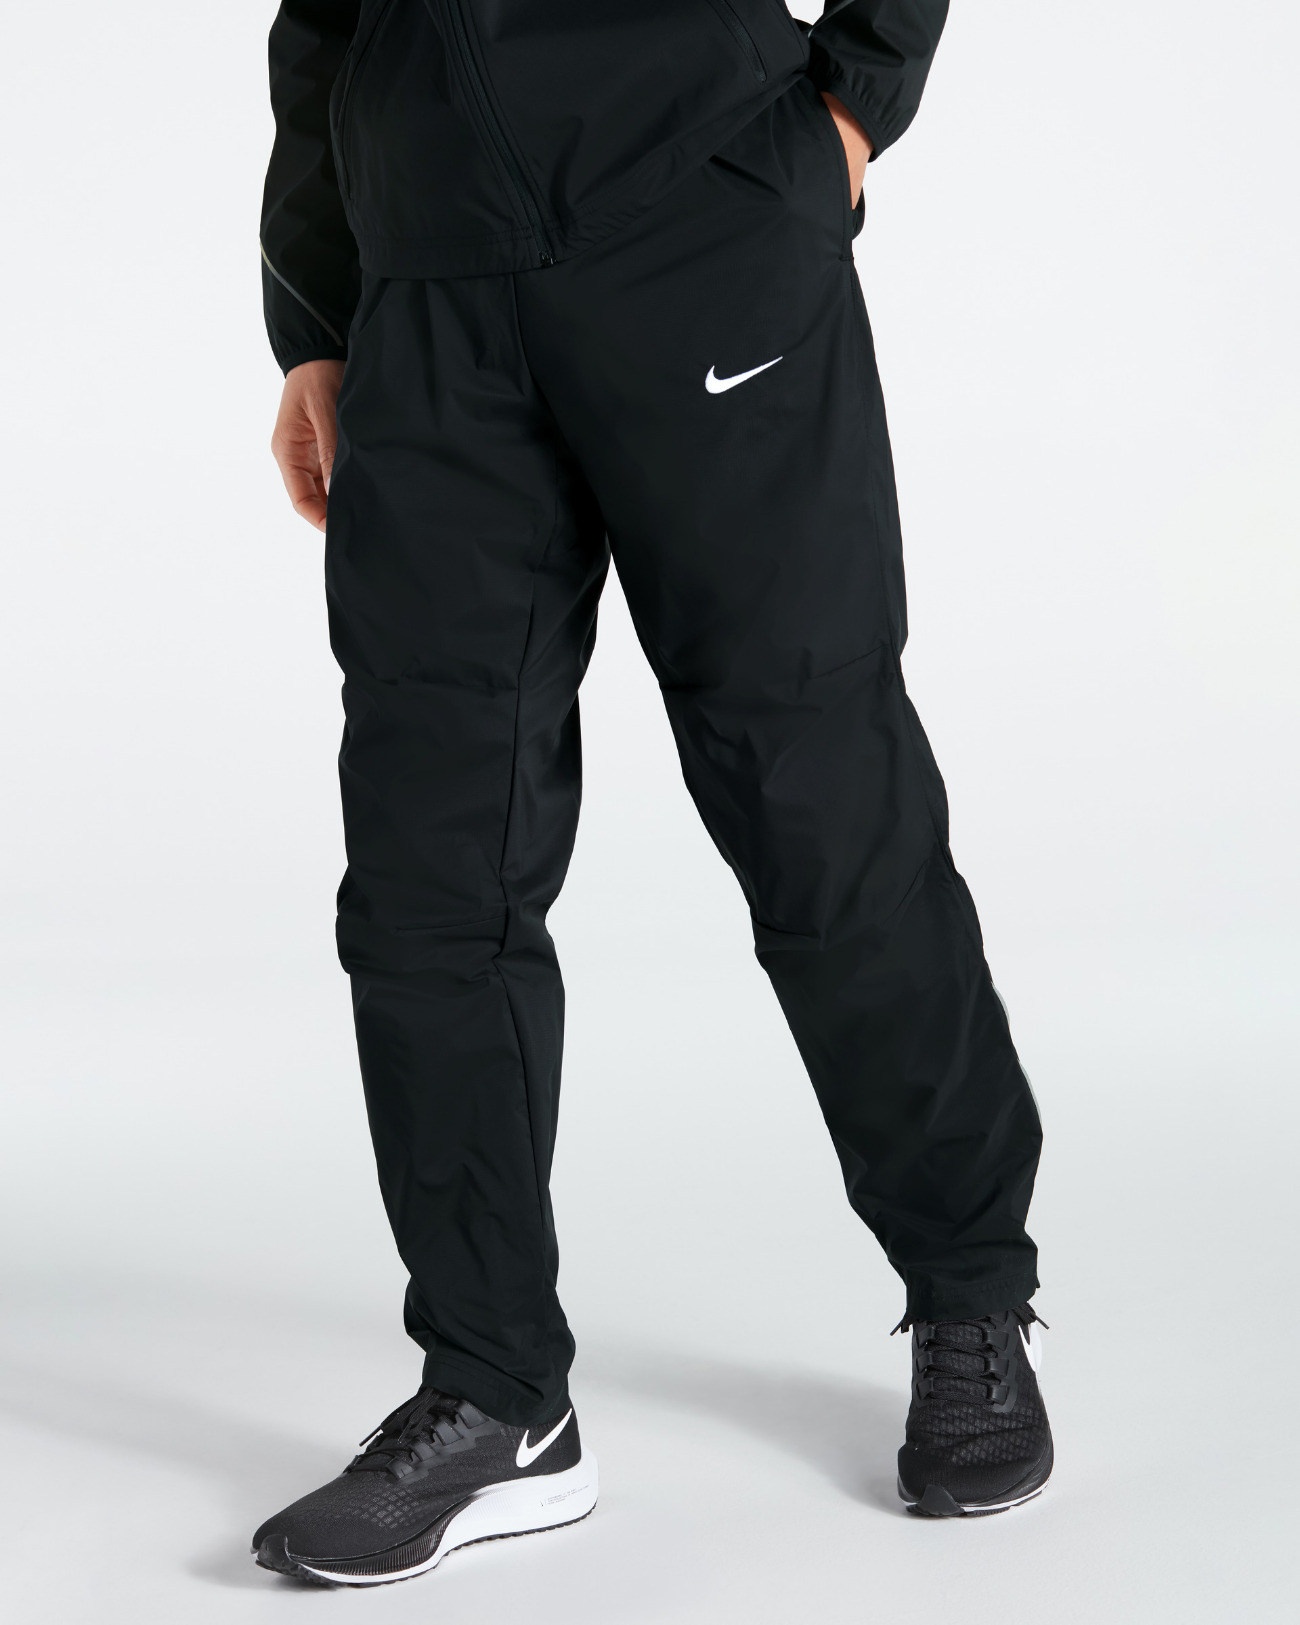 Pantalón Nike Woven para Hombre Atletismo - NT0321-010 - Negro